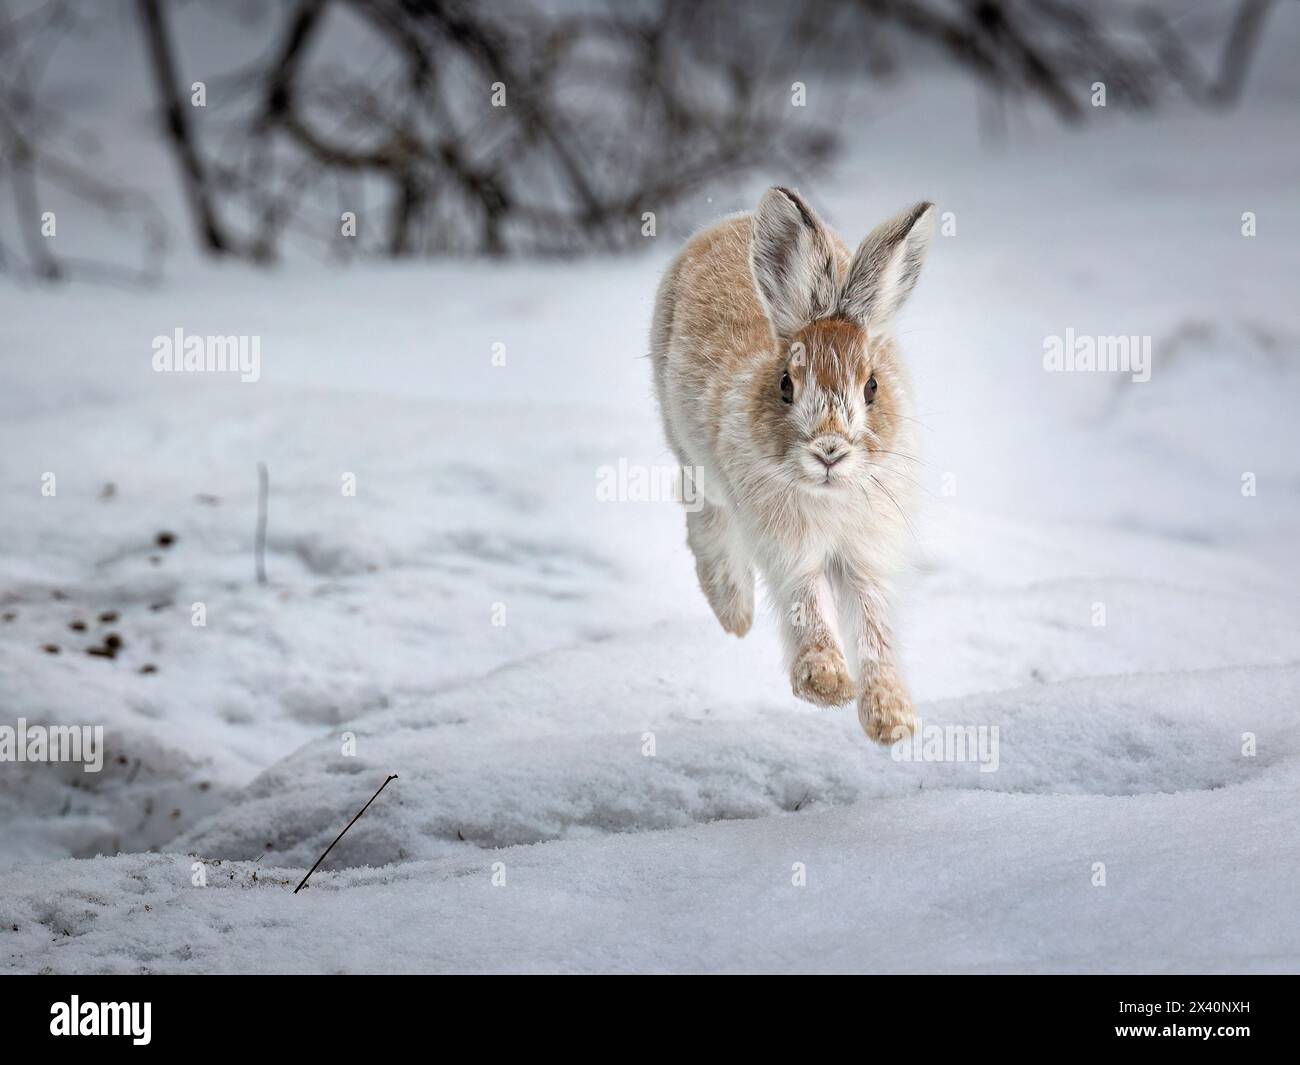 Un lièvre raquette (Lepus americanus) qui passe déjà du blanc hivernal au brun estival, borde la neige au début du printemps dans le centre-sud de l'Alaska Banque D'Images